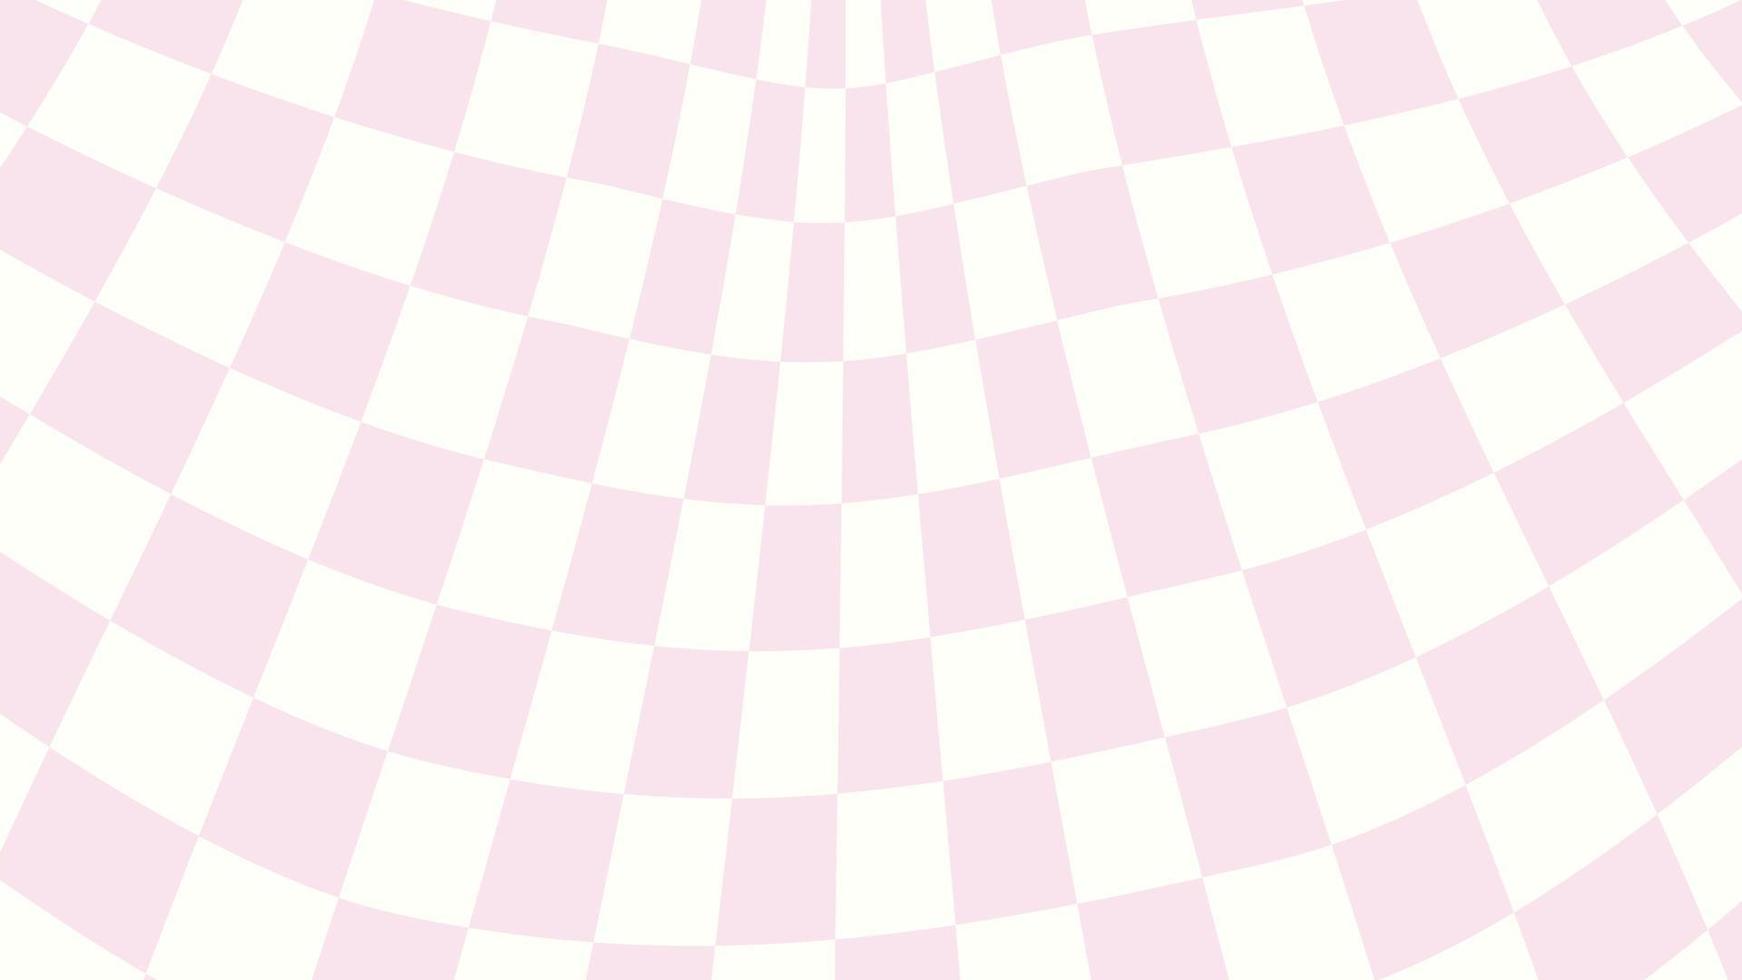 linda estética distorsionada tablero de ajedrez rosa pastel y amarillo,  gingham, plaid, cuadros, ilustración de papel tapiz de tartán, perfecto  para pancarta, telón de fondo, postal, fondo, papel tapiz 15486833 Vector en